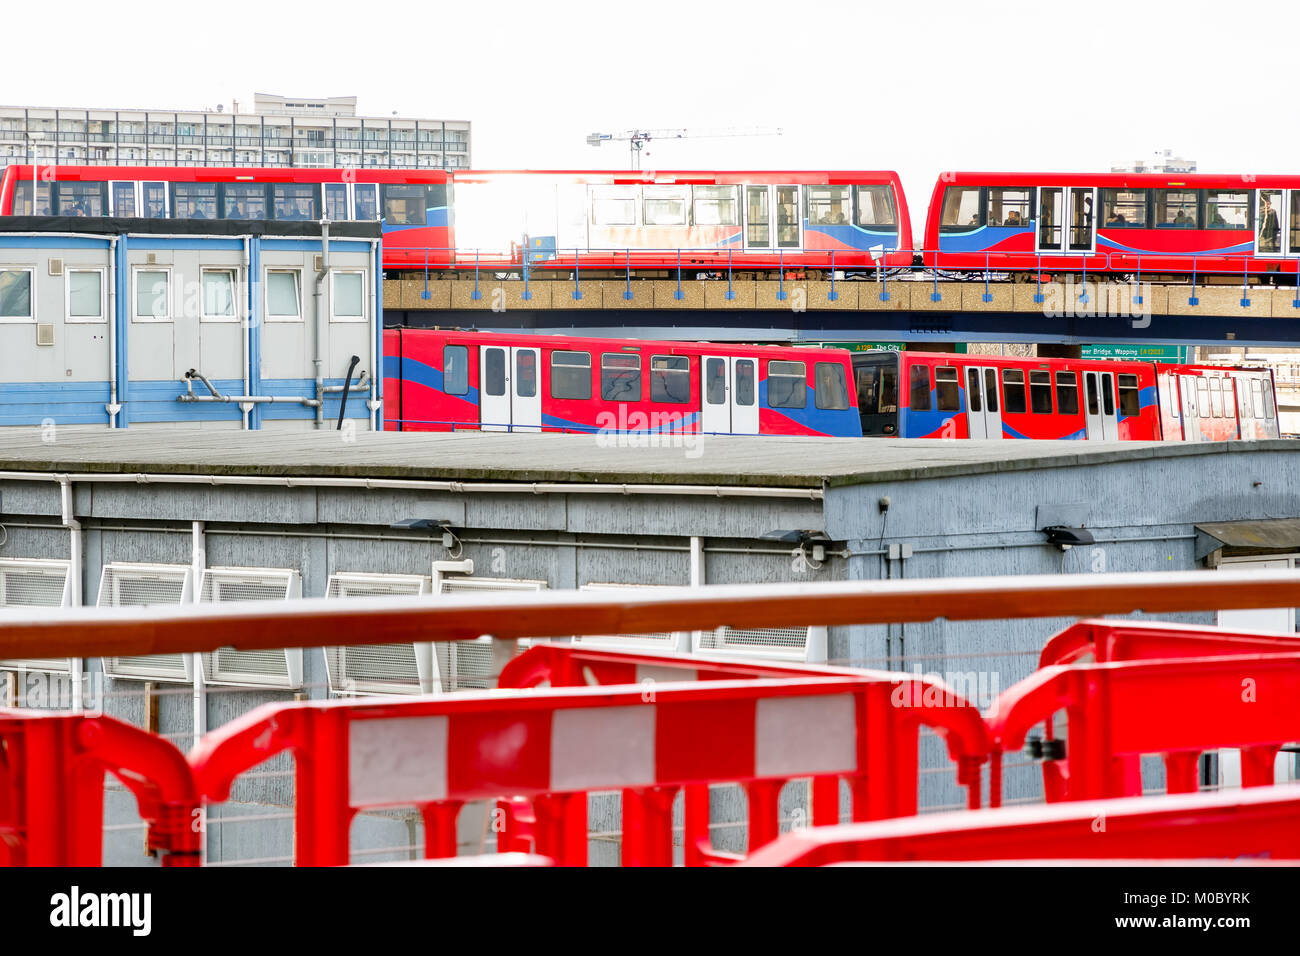 Zwei leichte Züge, die sich kreuzen, durch eine Baustelle in Canary Wharf, London gesehen Stockfoto